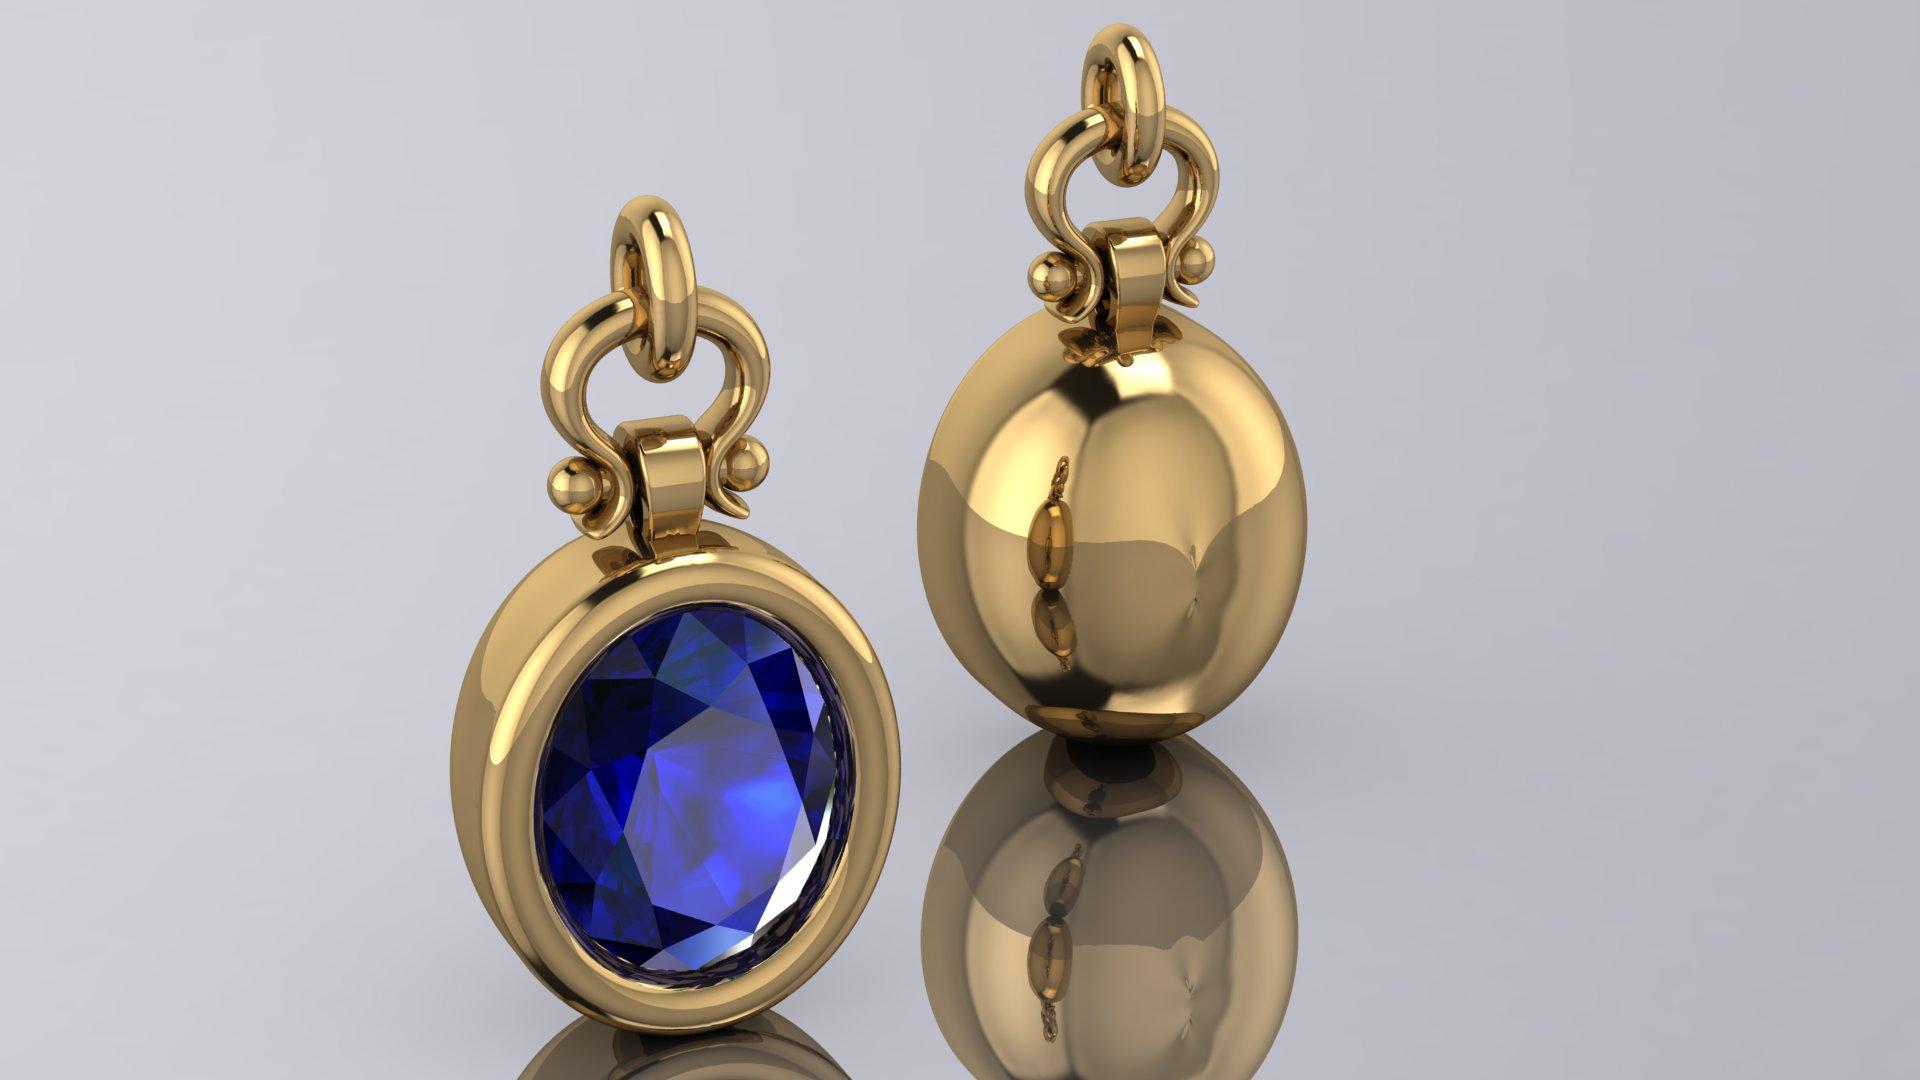 Oval Cut Berberyn Certified 3.04 Carat Oval Blue Sapphire Custom Pendant Necklace in 18k For Sale